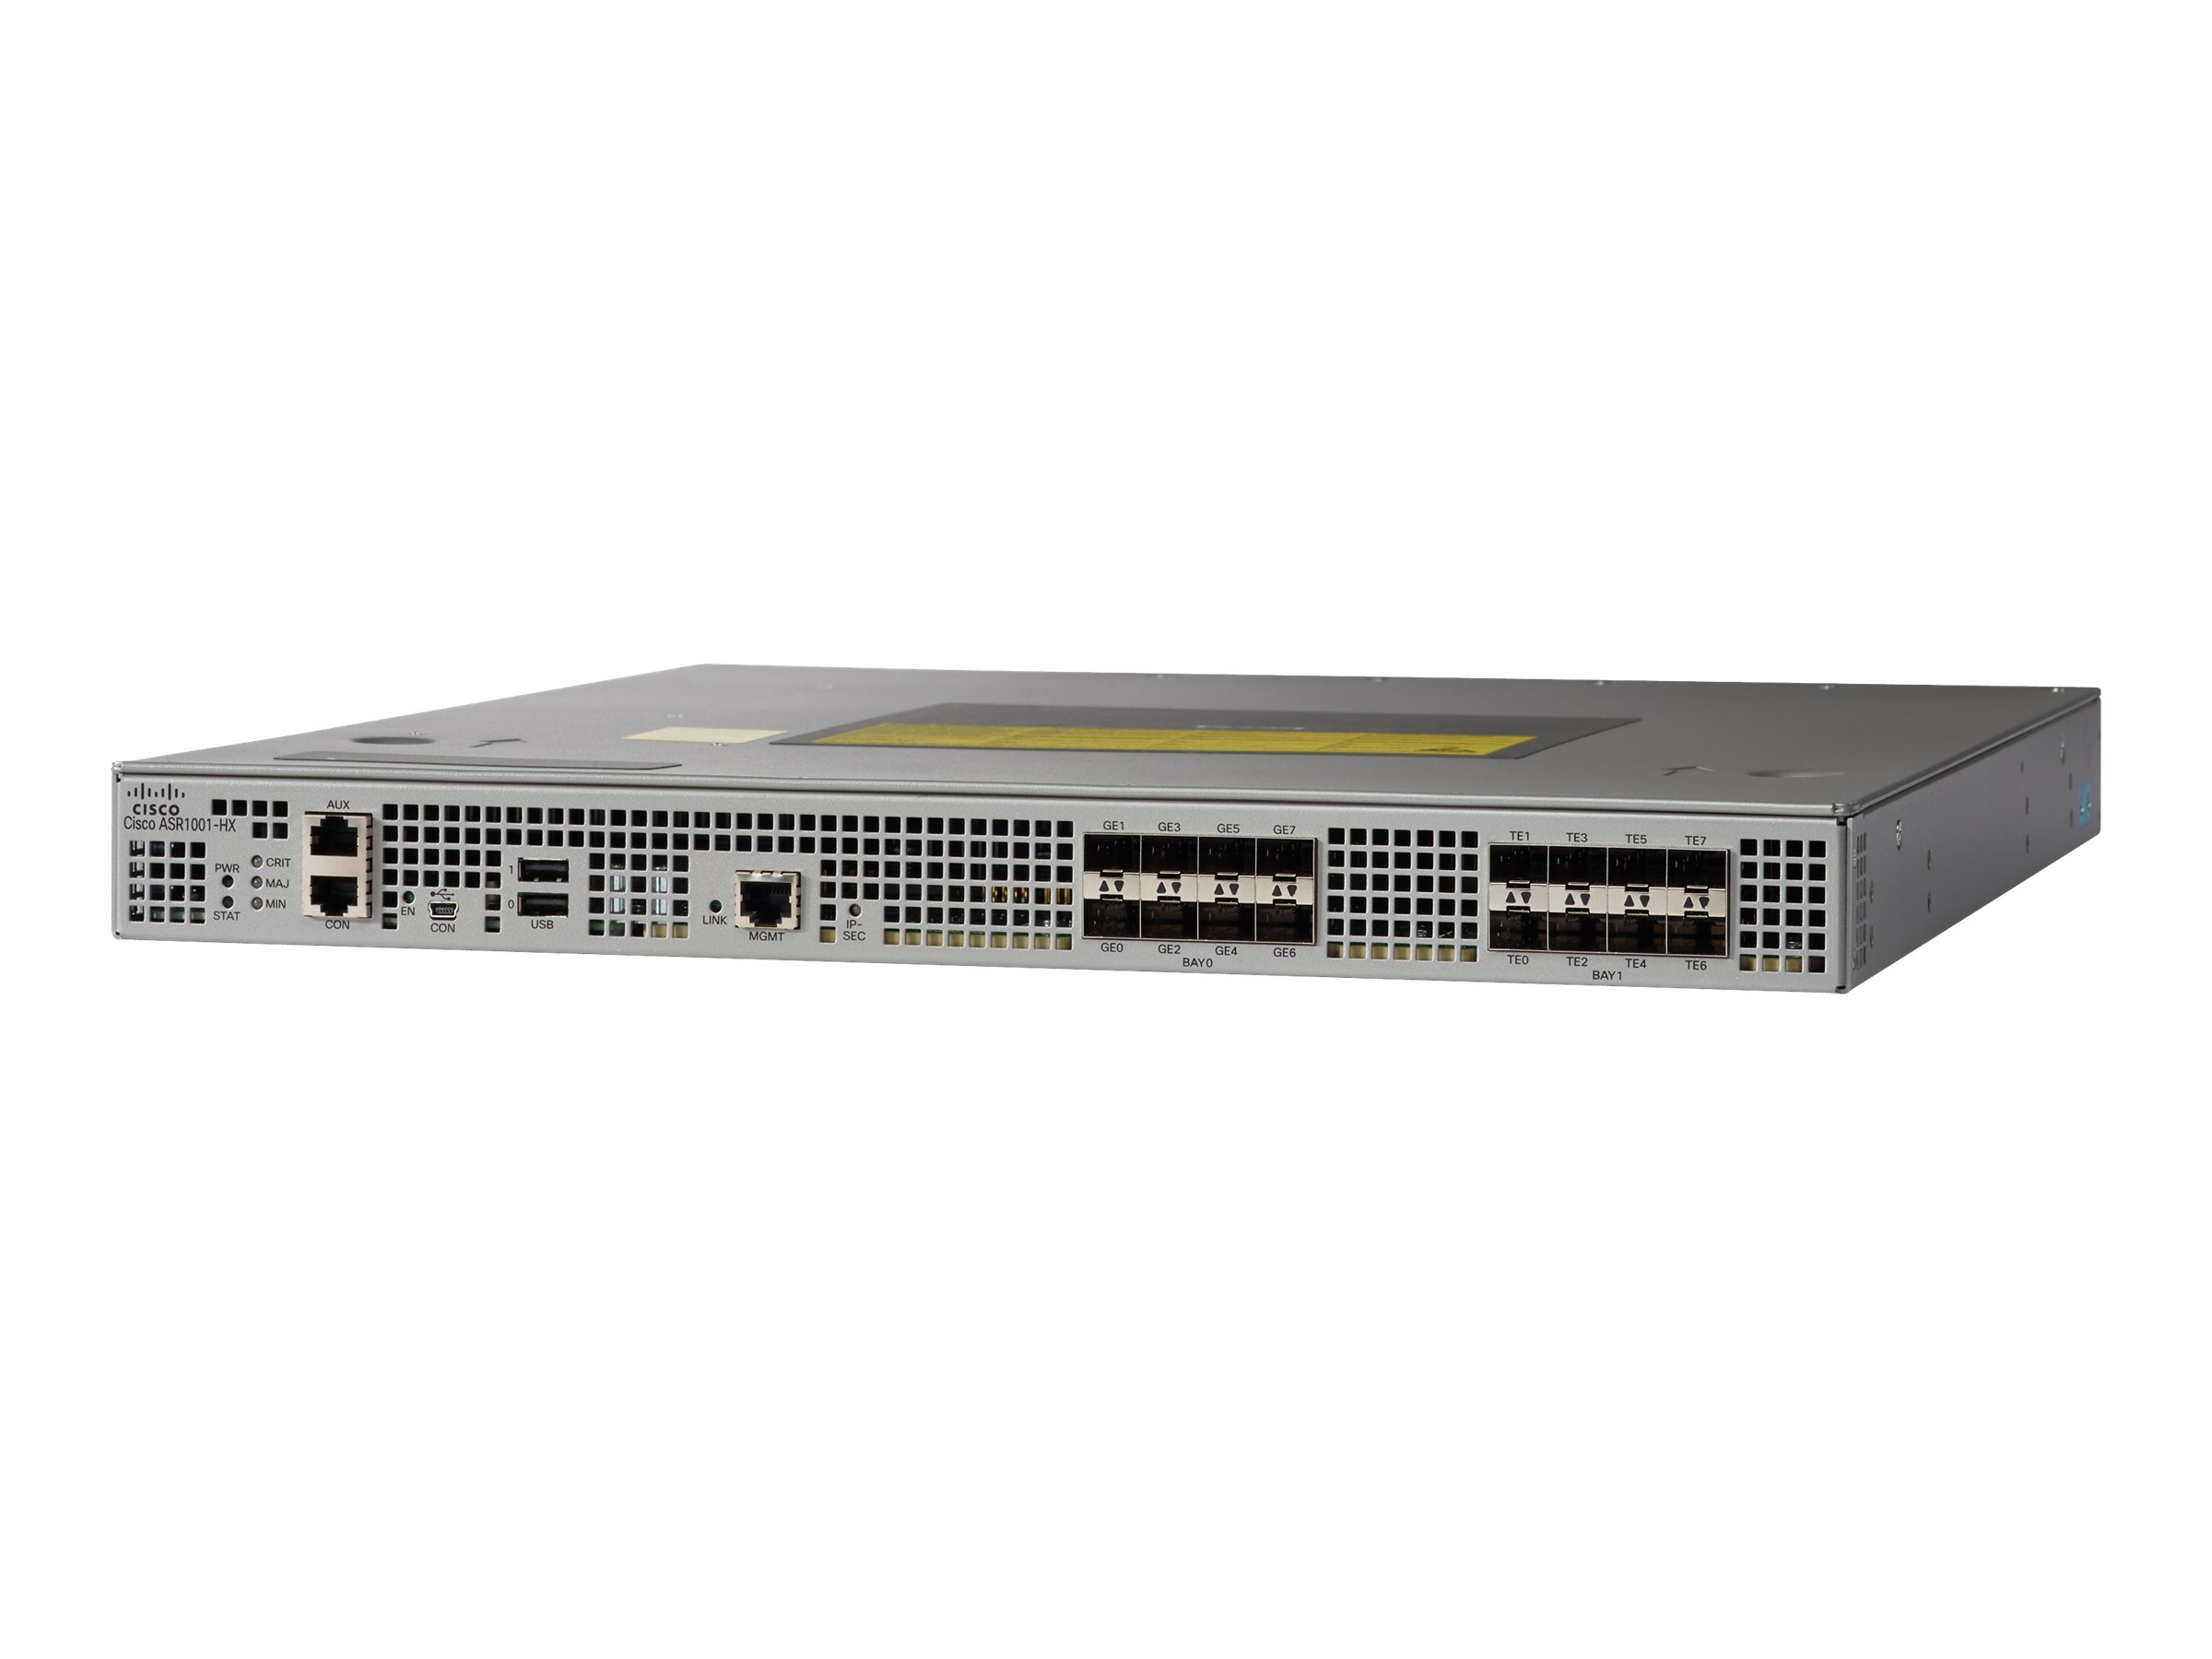 Cisco ASR 1001-HX - - Router - - 10GbE - Luftstrom von vorne nach hinten - an Rack montierbar